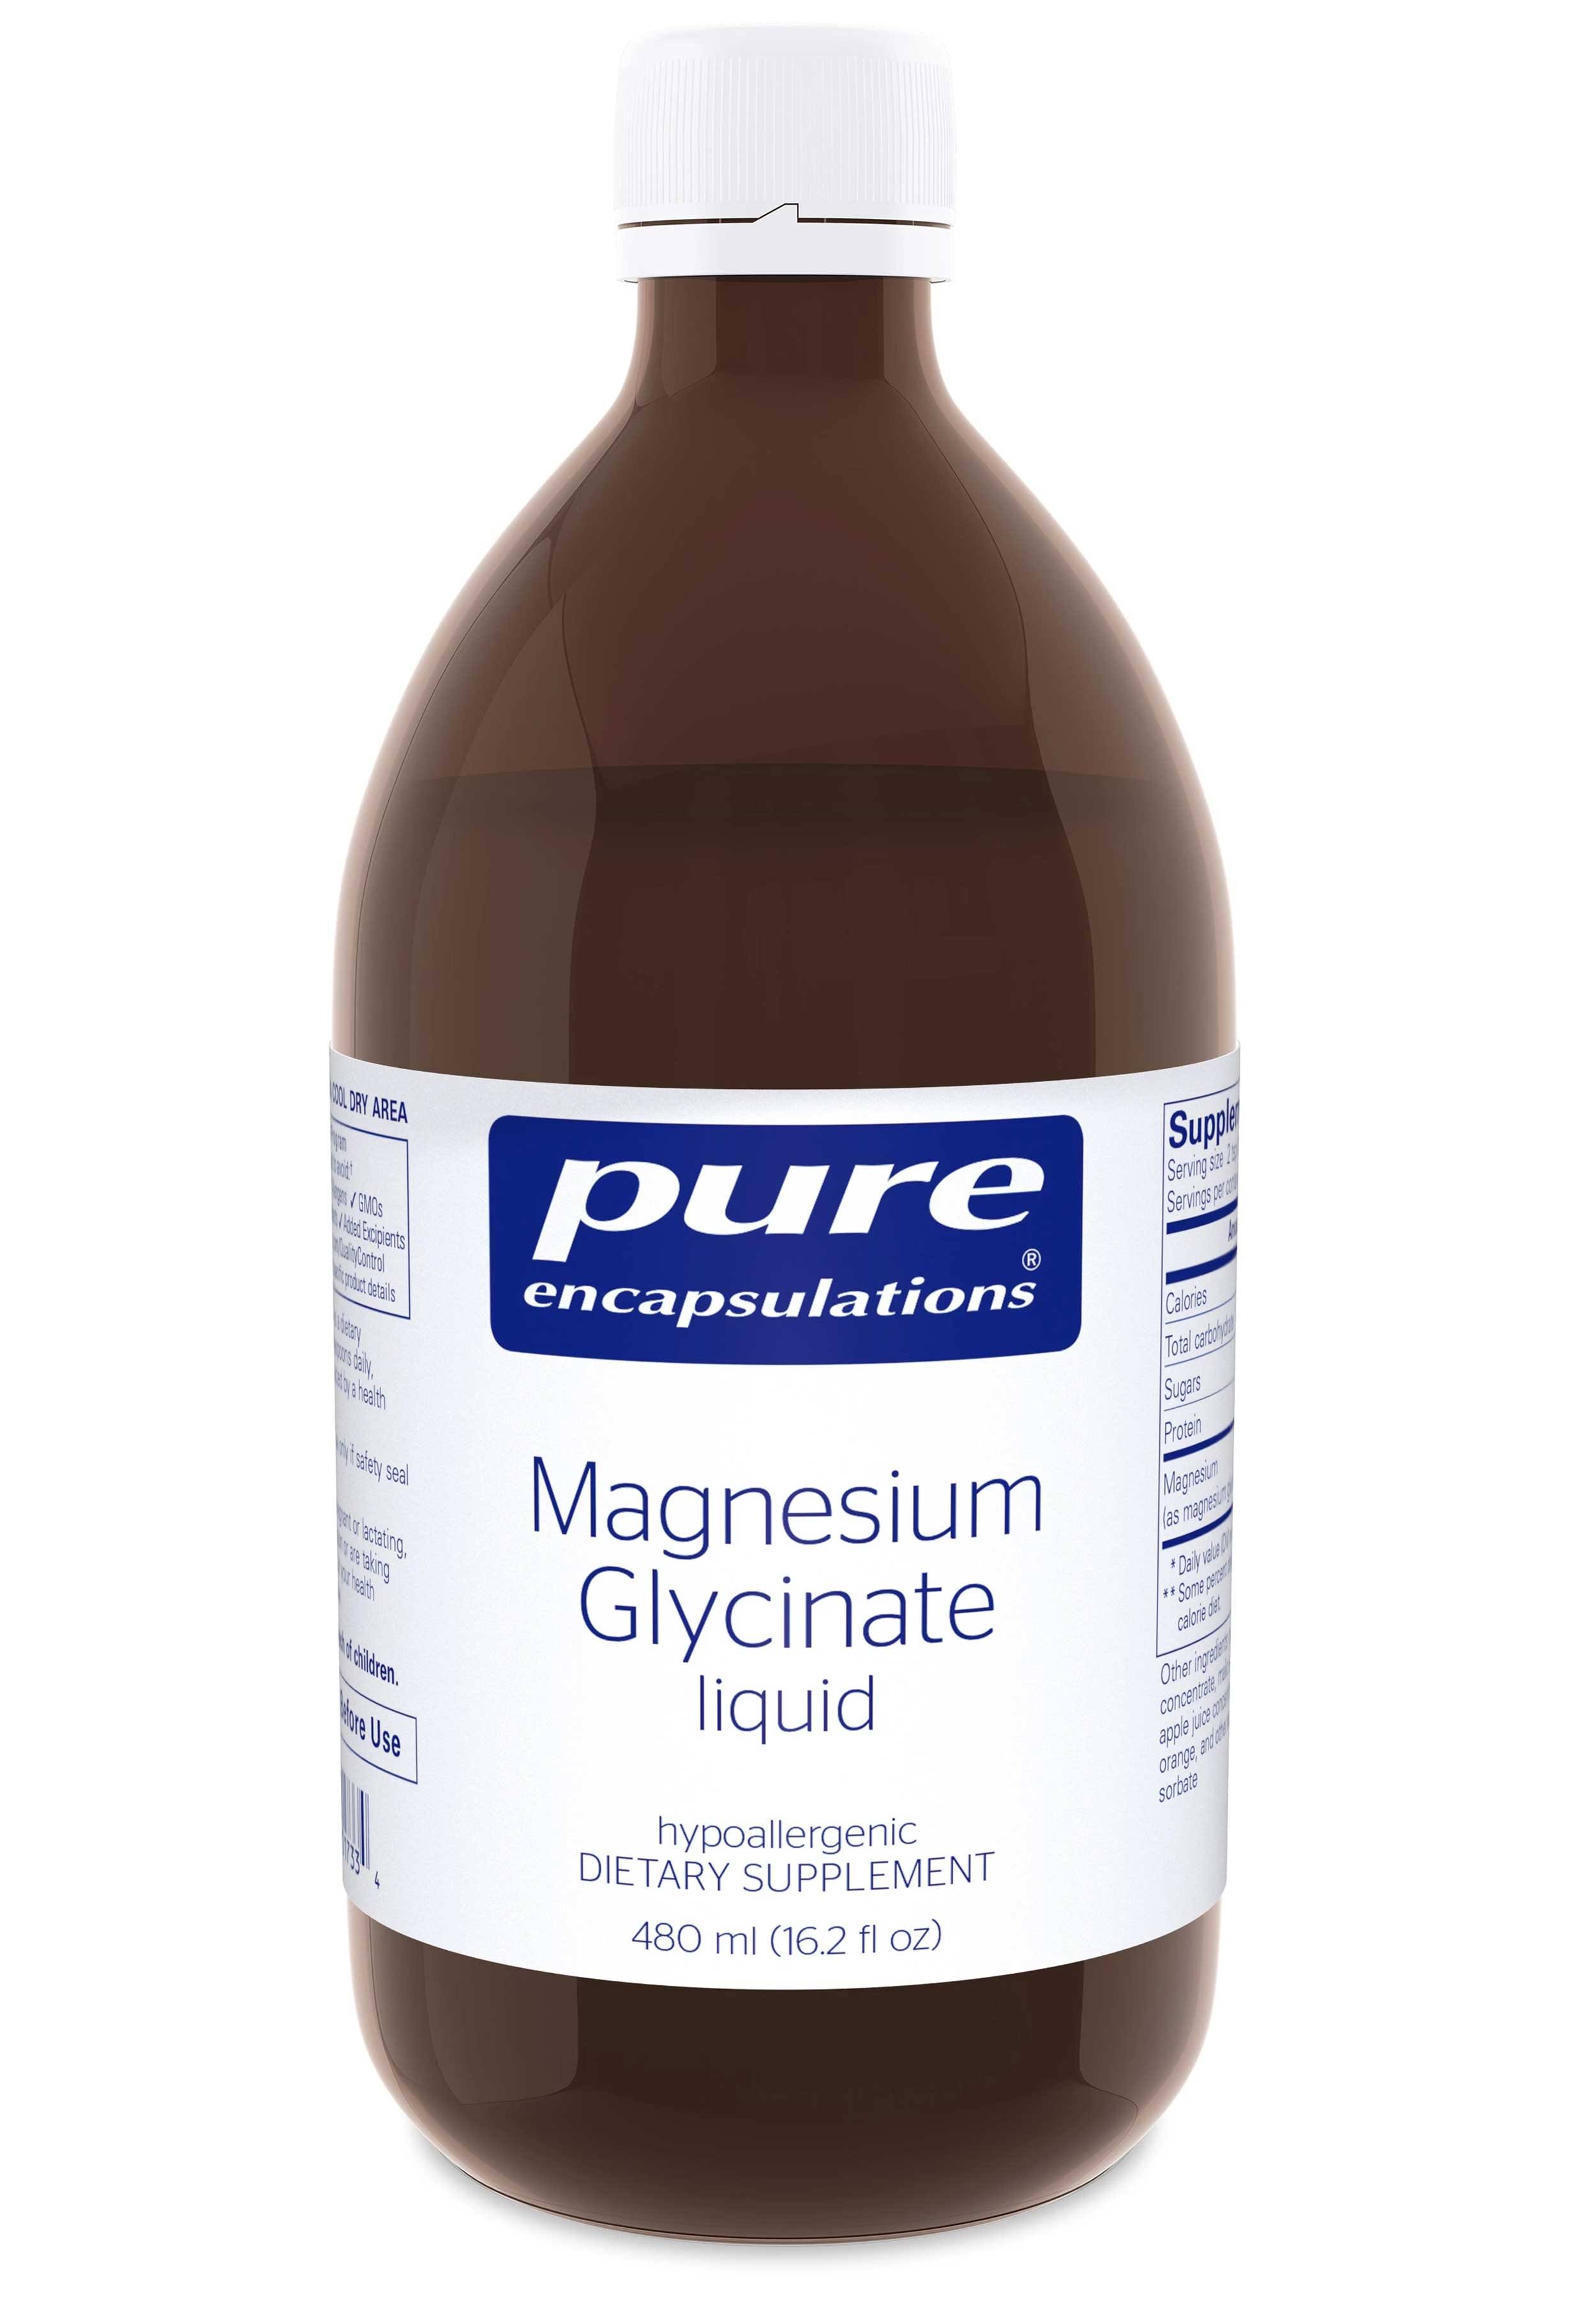 Pure Encapsulations Magnesium Glycinate Liquid Dietary Supplement - 16.2oz